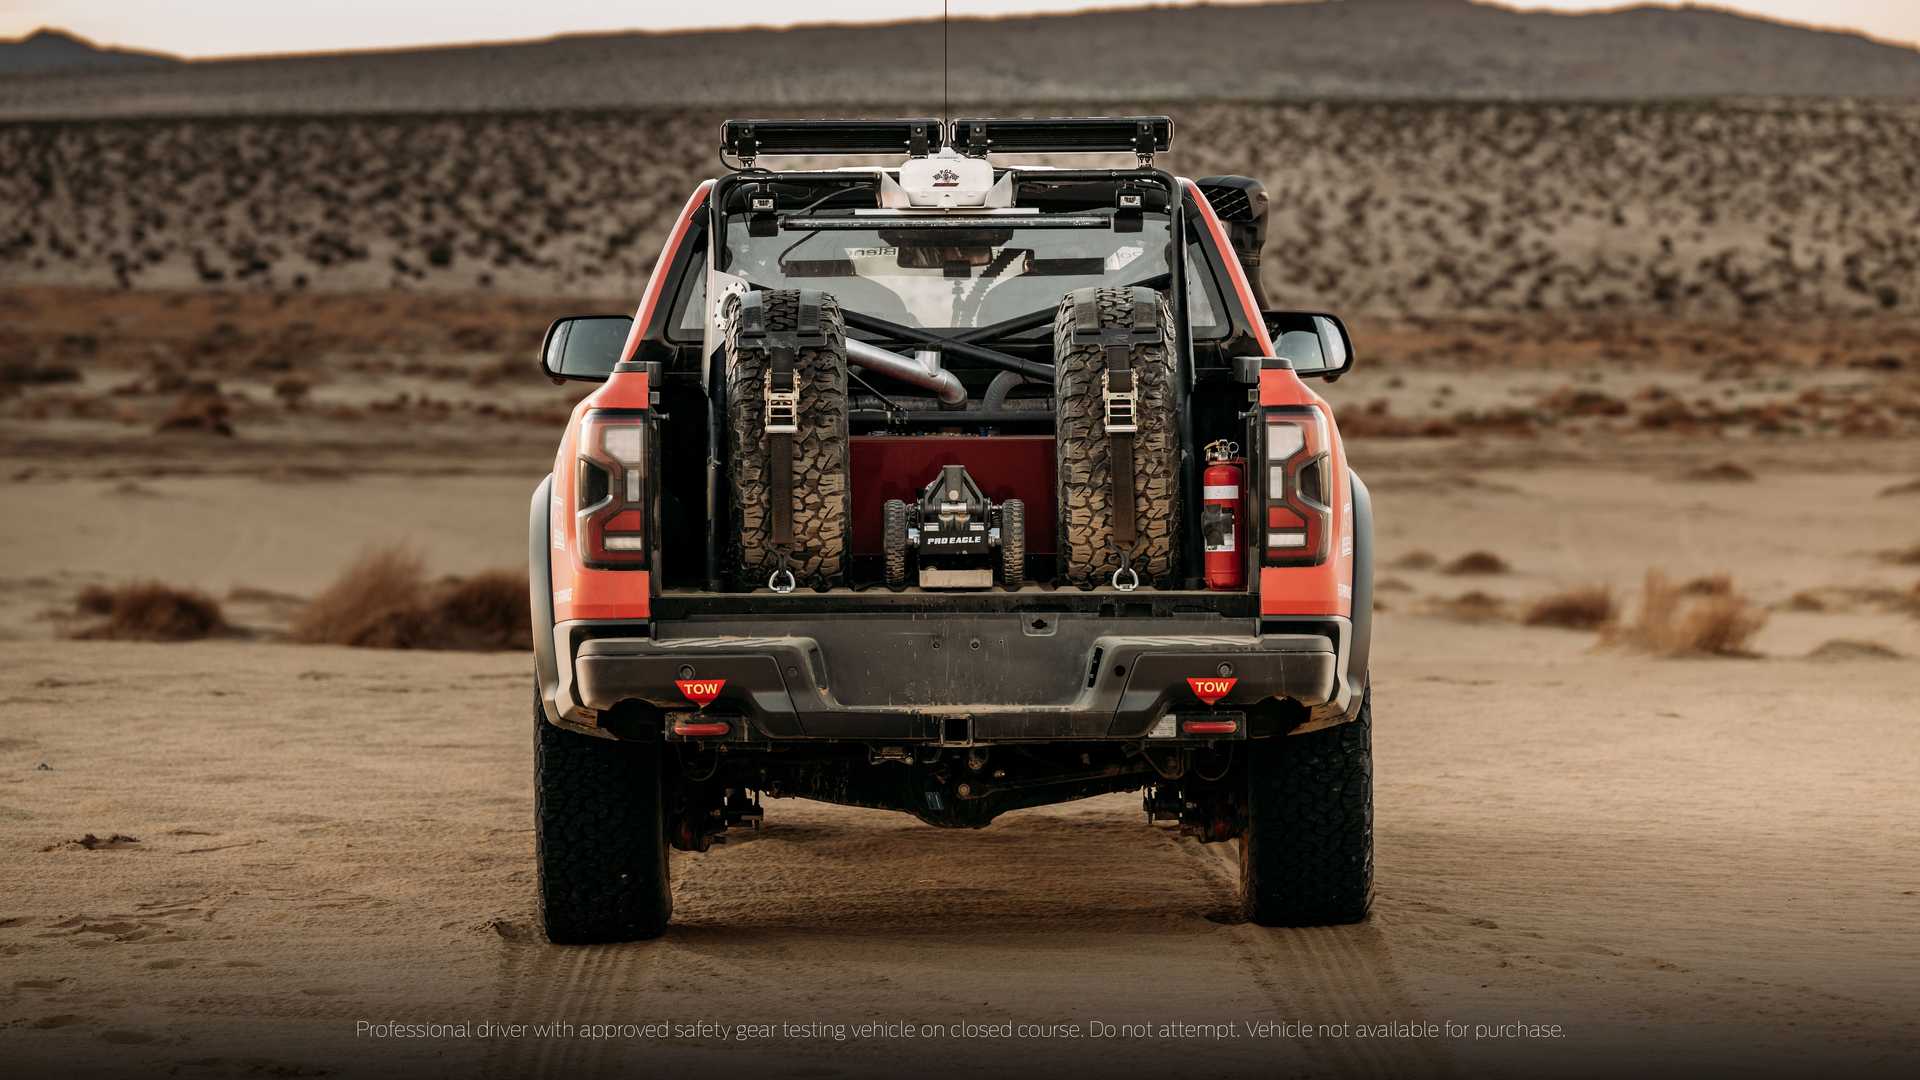 Ford Ranger Raptor de traseira mostra caixa de carga com pneus suplentes e depósito de combustível adicional